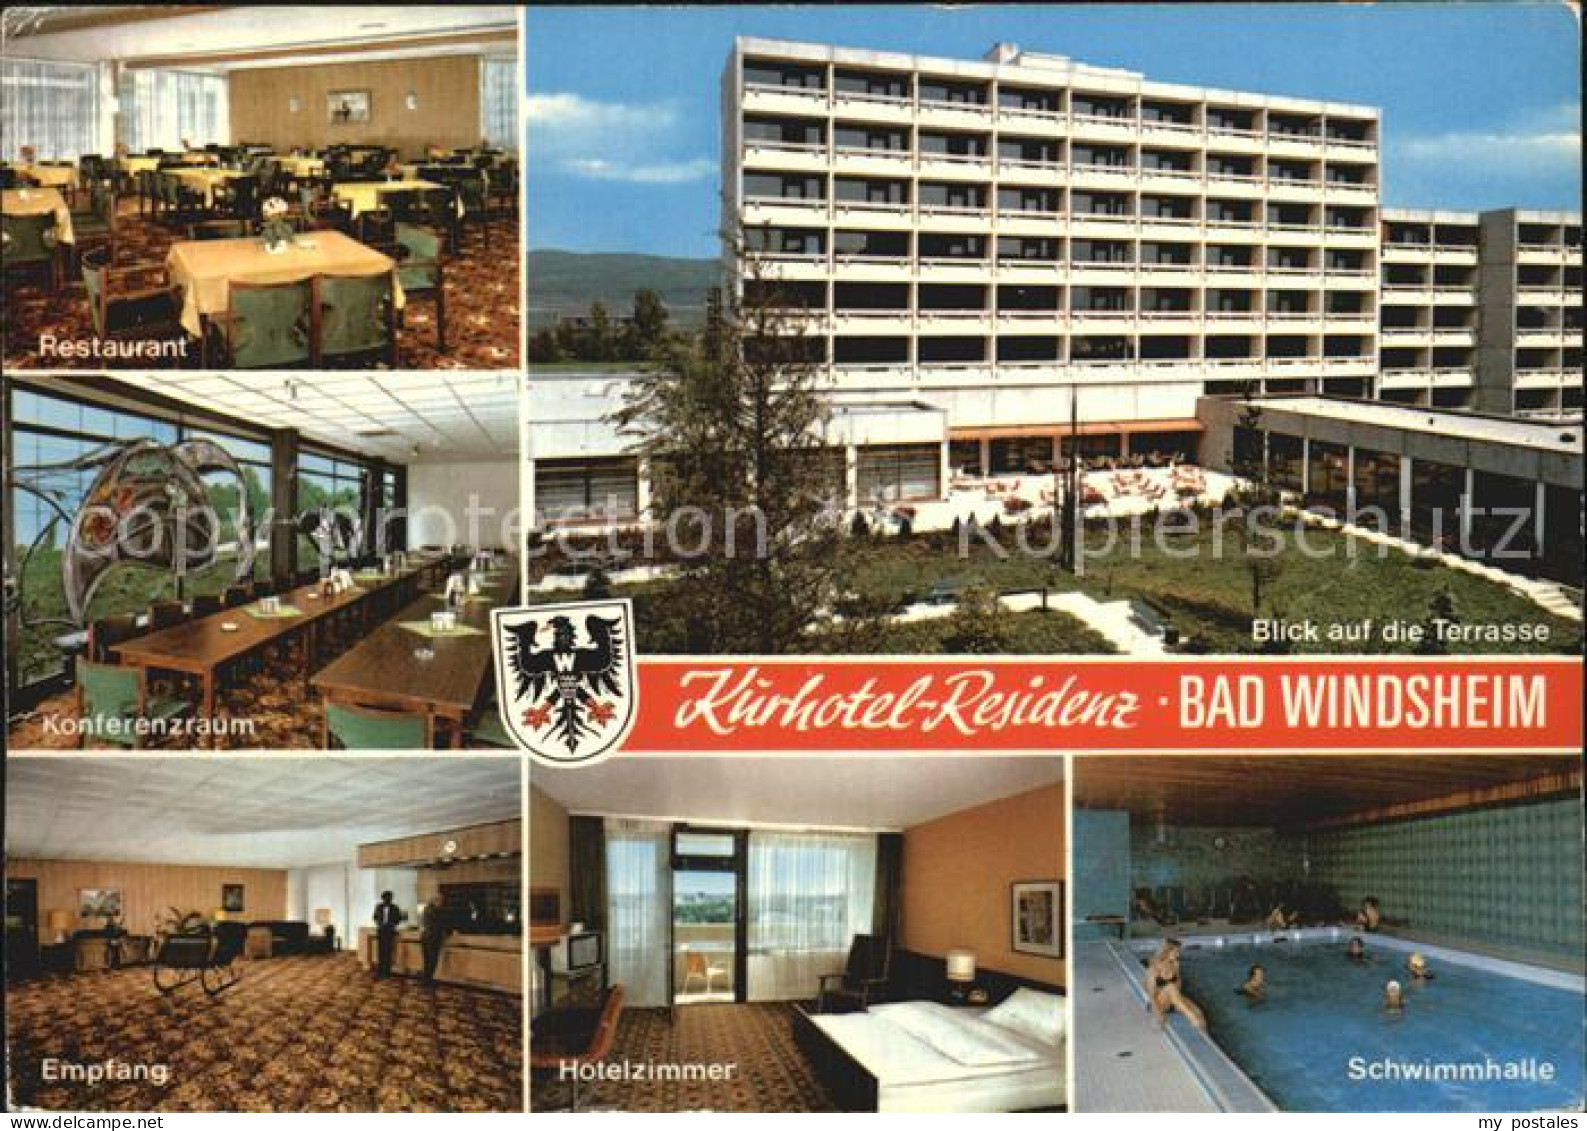 72499587 Bad Windsheim Kurhotel Residenz Restaurant Empfang Konferenzraum Hotelz - Bad Windsheim